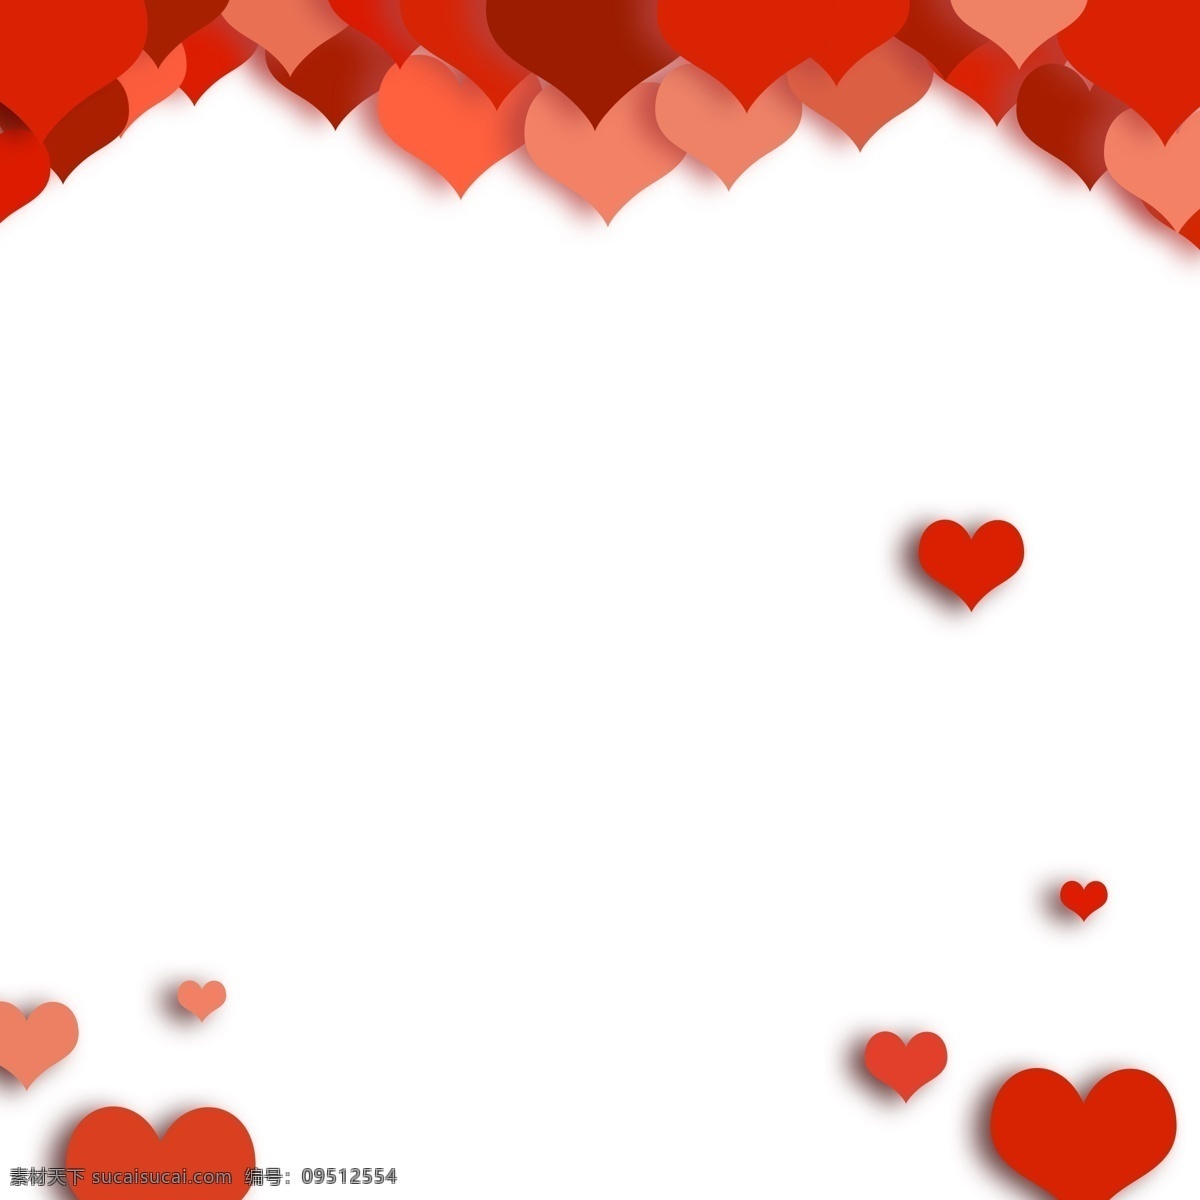 情人节 爱心 边框 插画 情人节装饰 装饰 爱心边框 情人节边框 红色爱心 红色心形 红心 漂亮边框